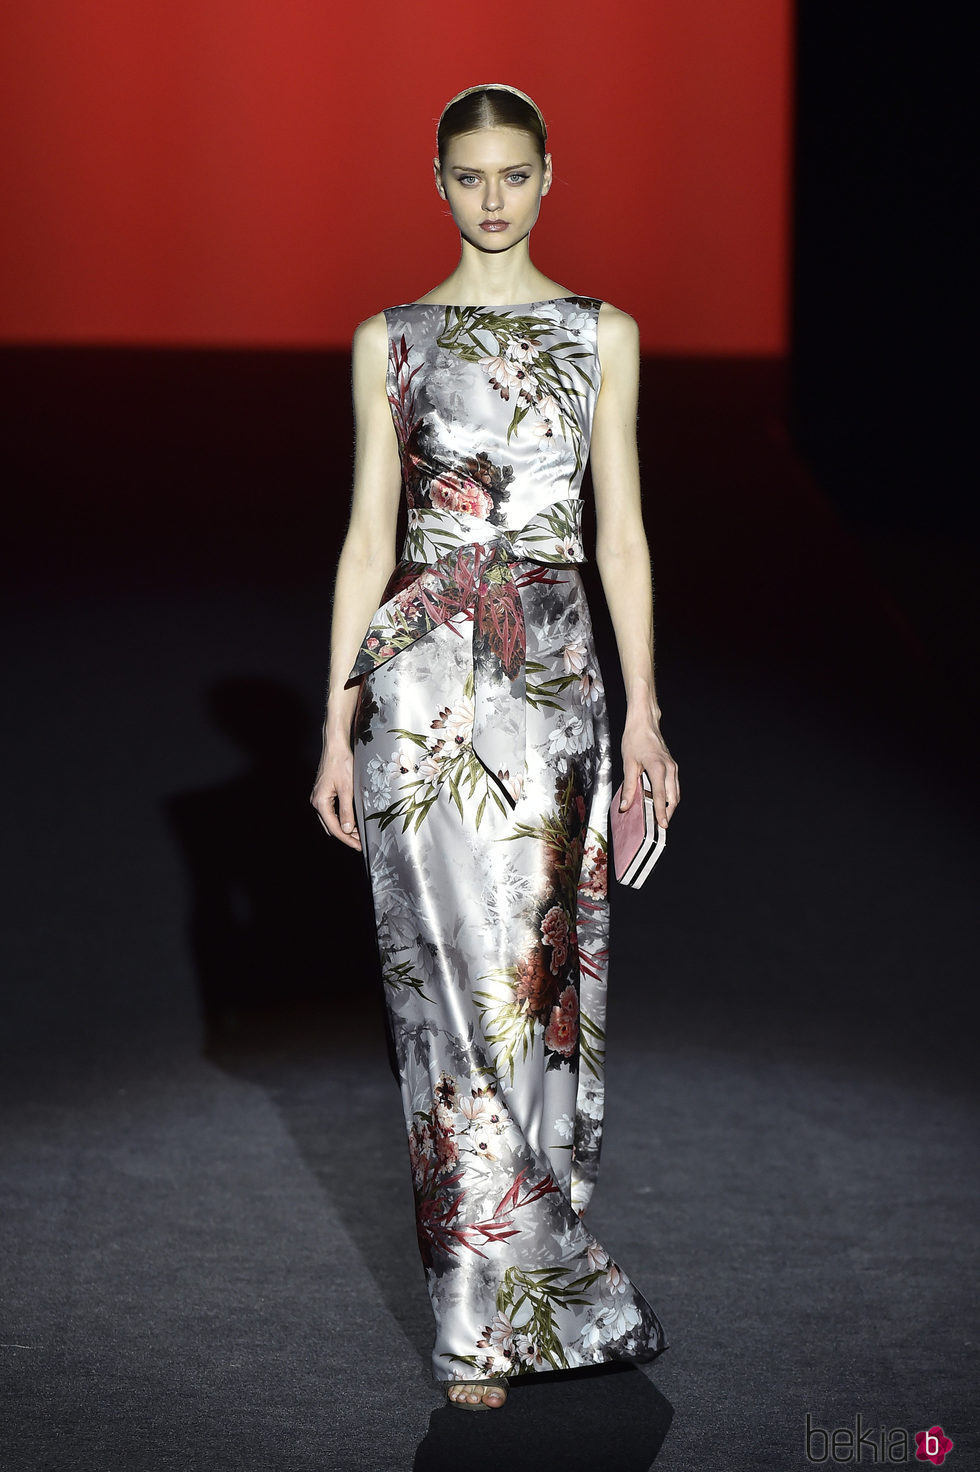 Vestido de raso floral print de Hannibal Laguna de la colección otoño/invierno 2017/2018 en Madrid Fashion Week